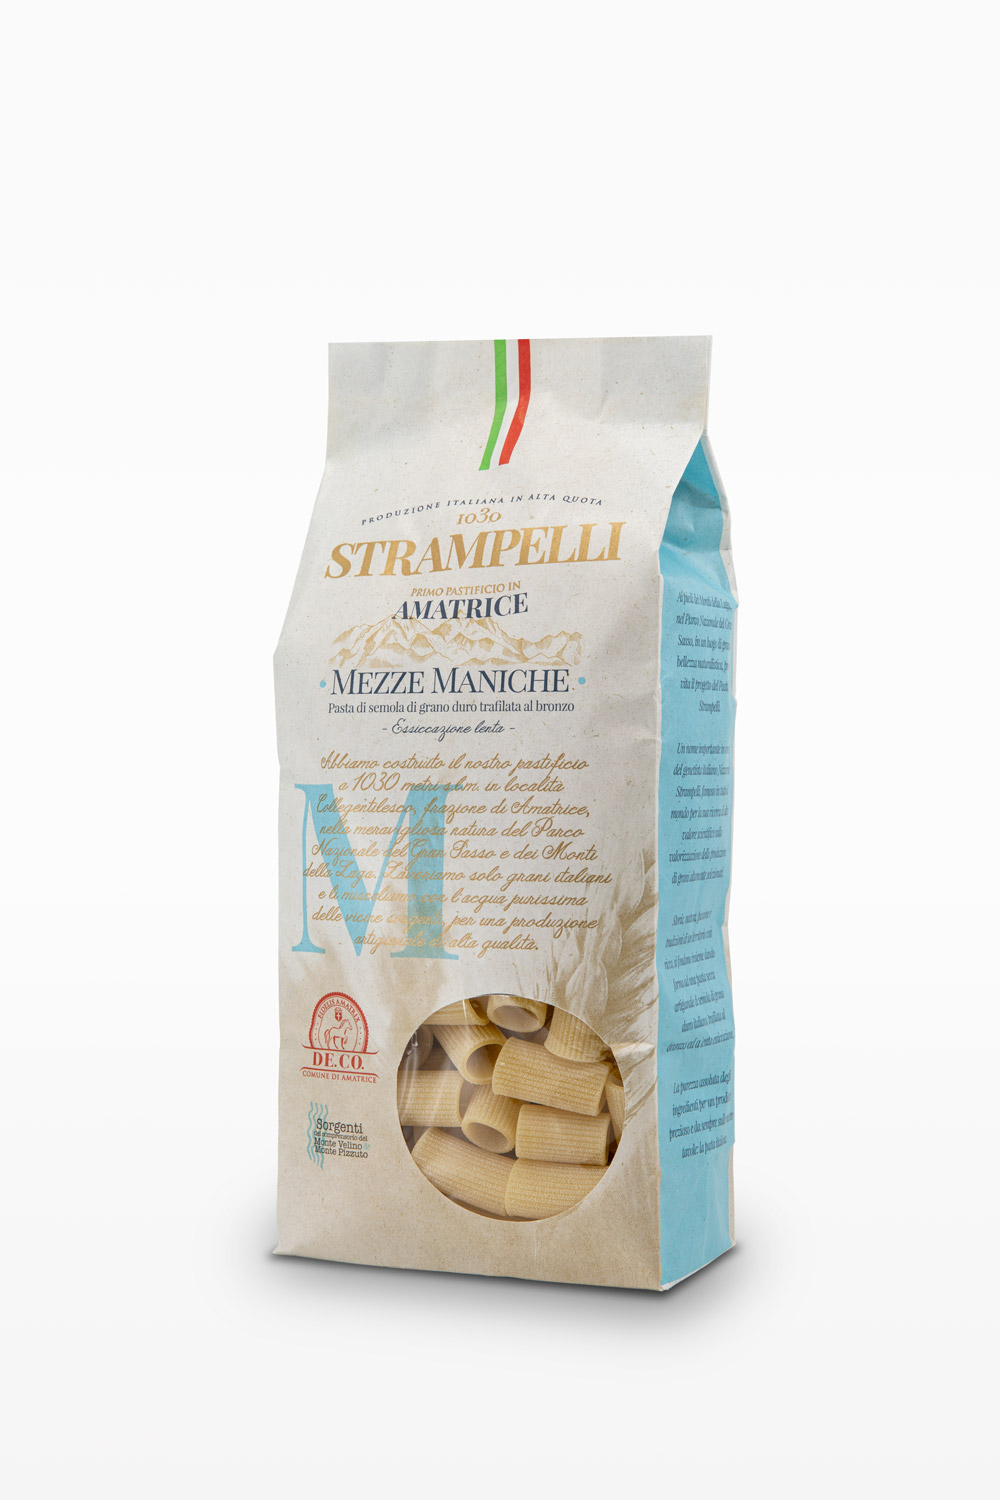 Spaghetti - Pasta di semola di grano duro trafilata al bronzo, grano 100% italiano essiccazione lenta.